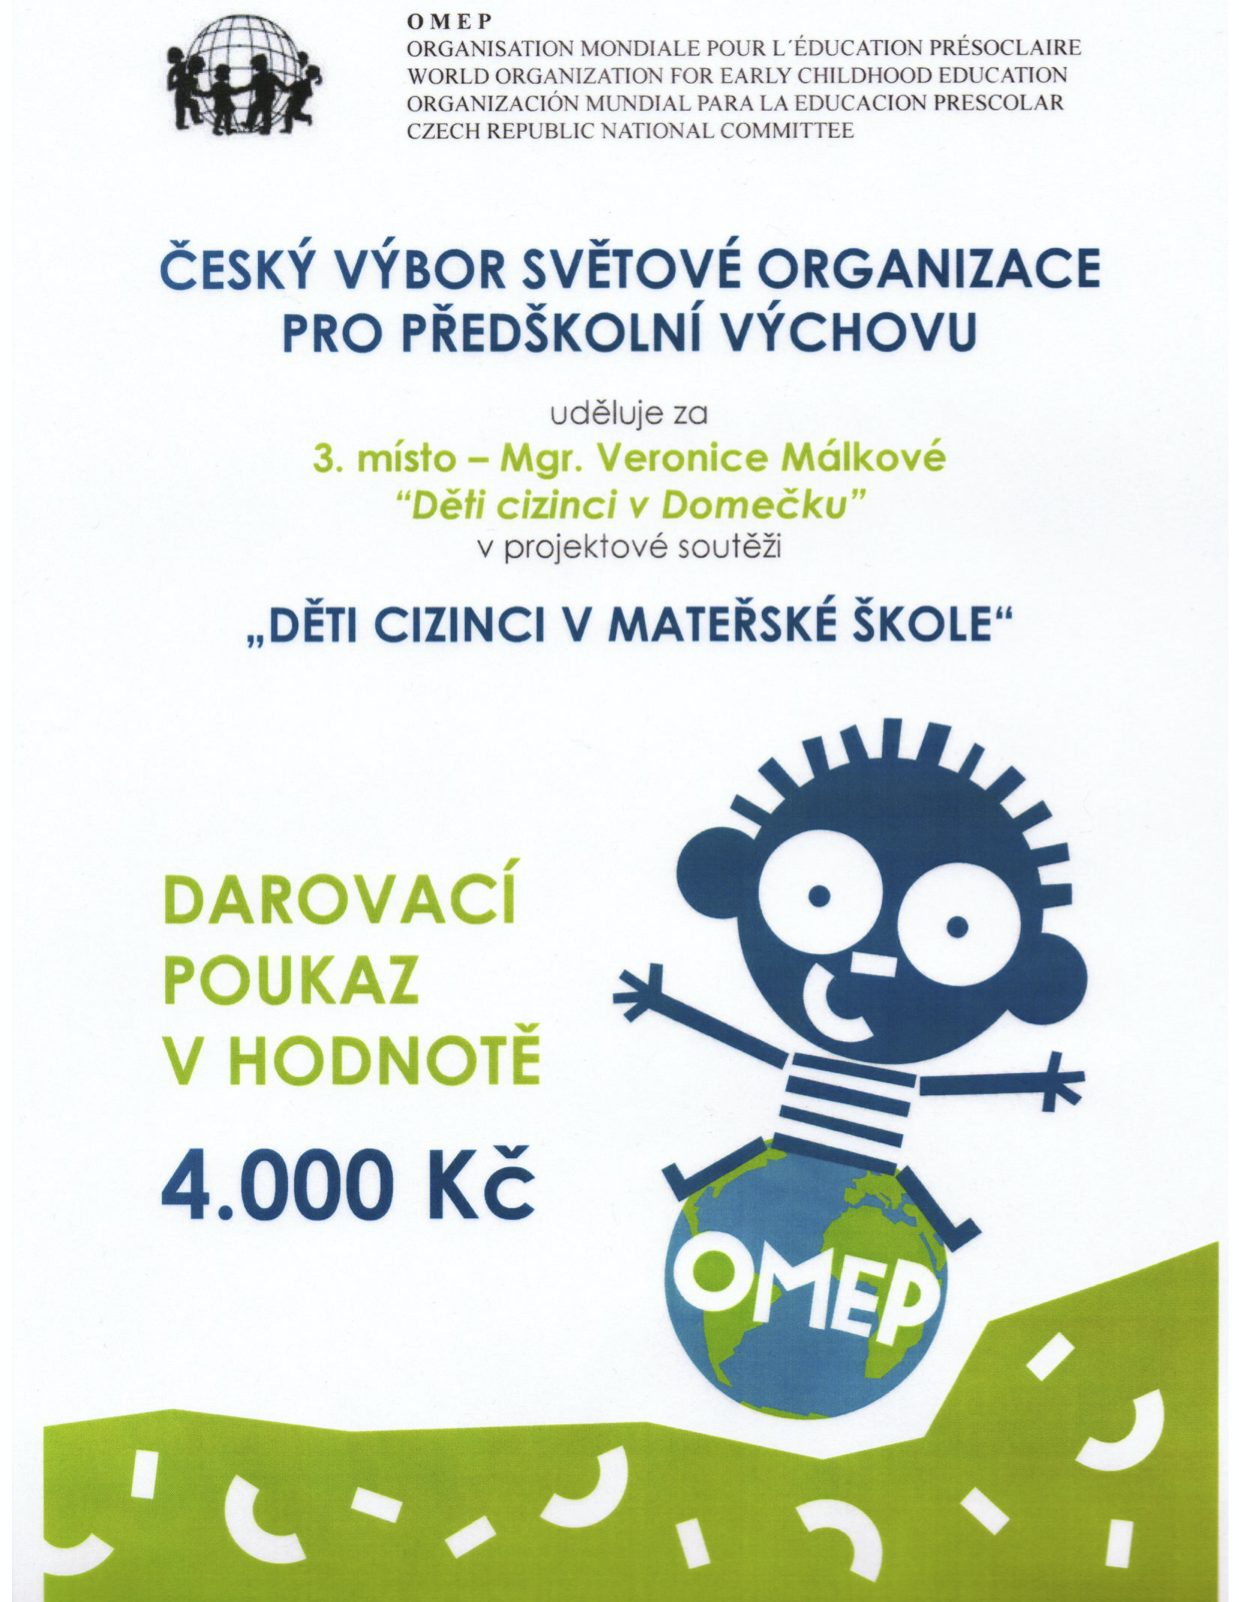 Prize for Domeček